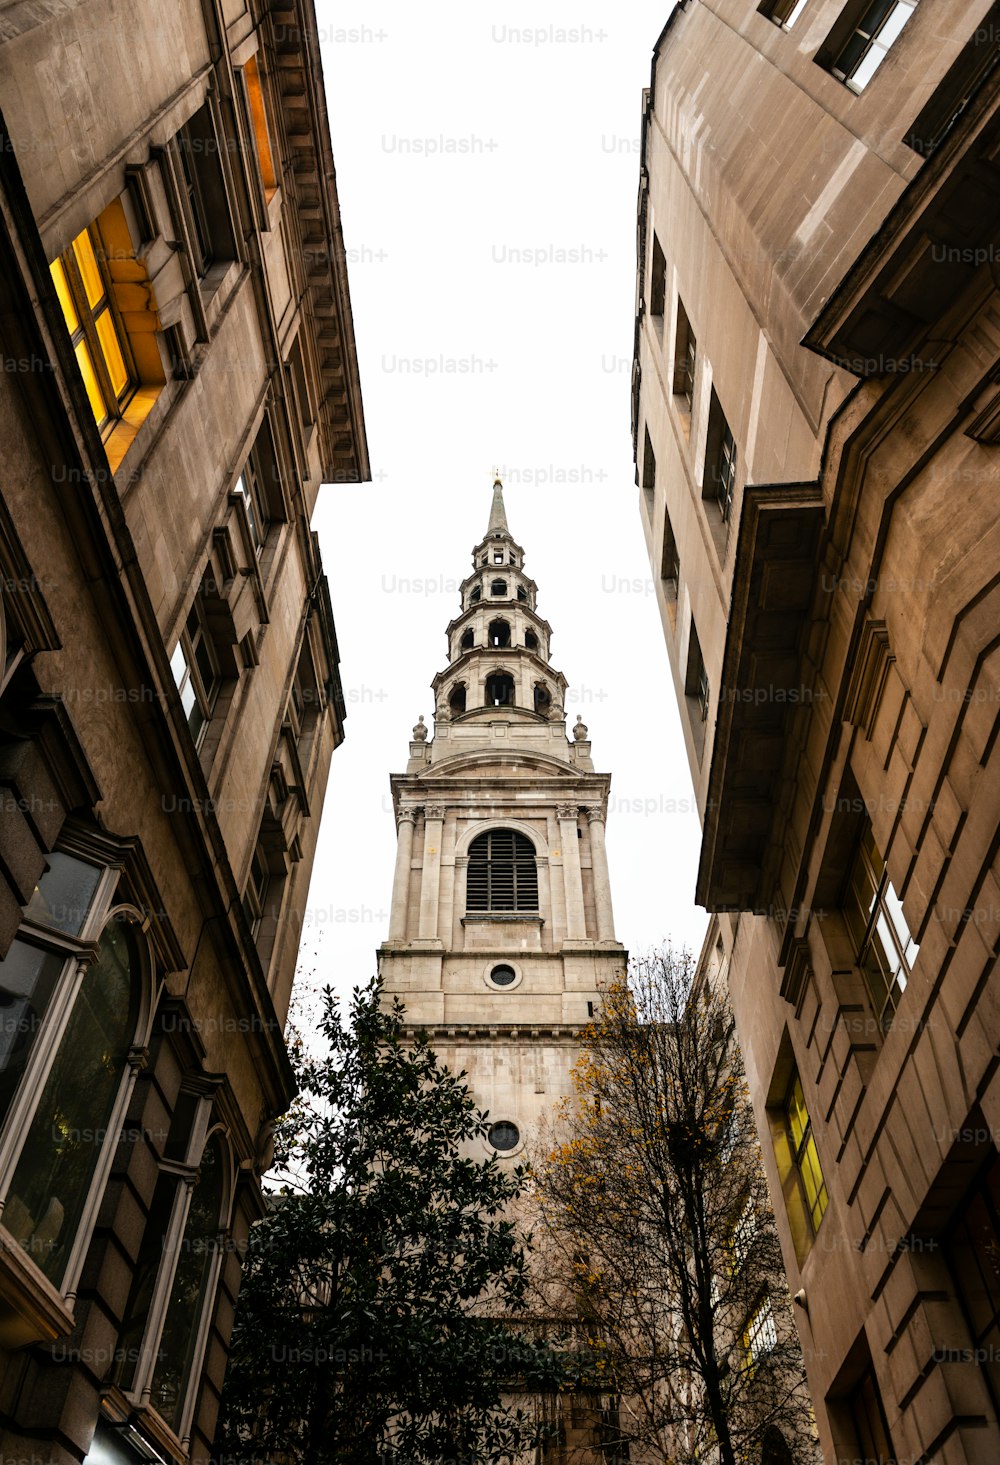 La tour de l’église St Bride, l’une des plus anciennes églises de Londres, vue à travers une rue étroite.